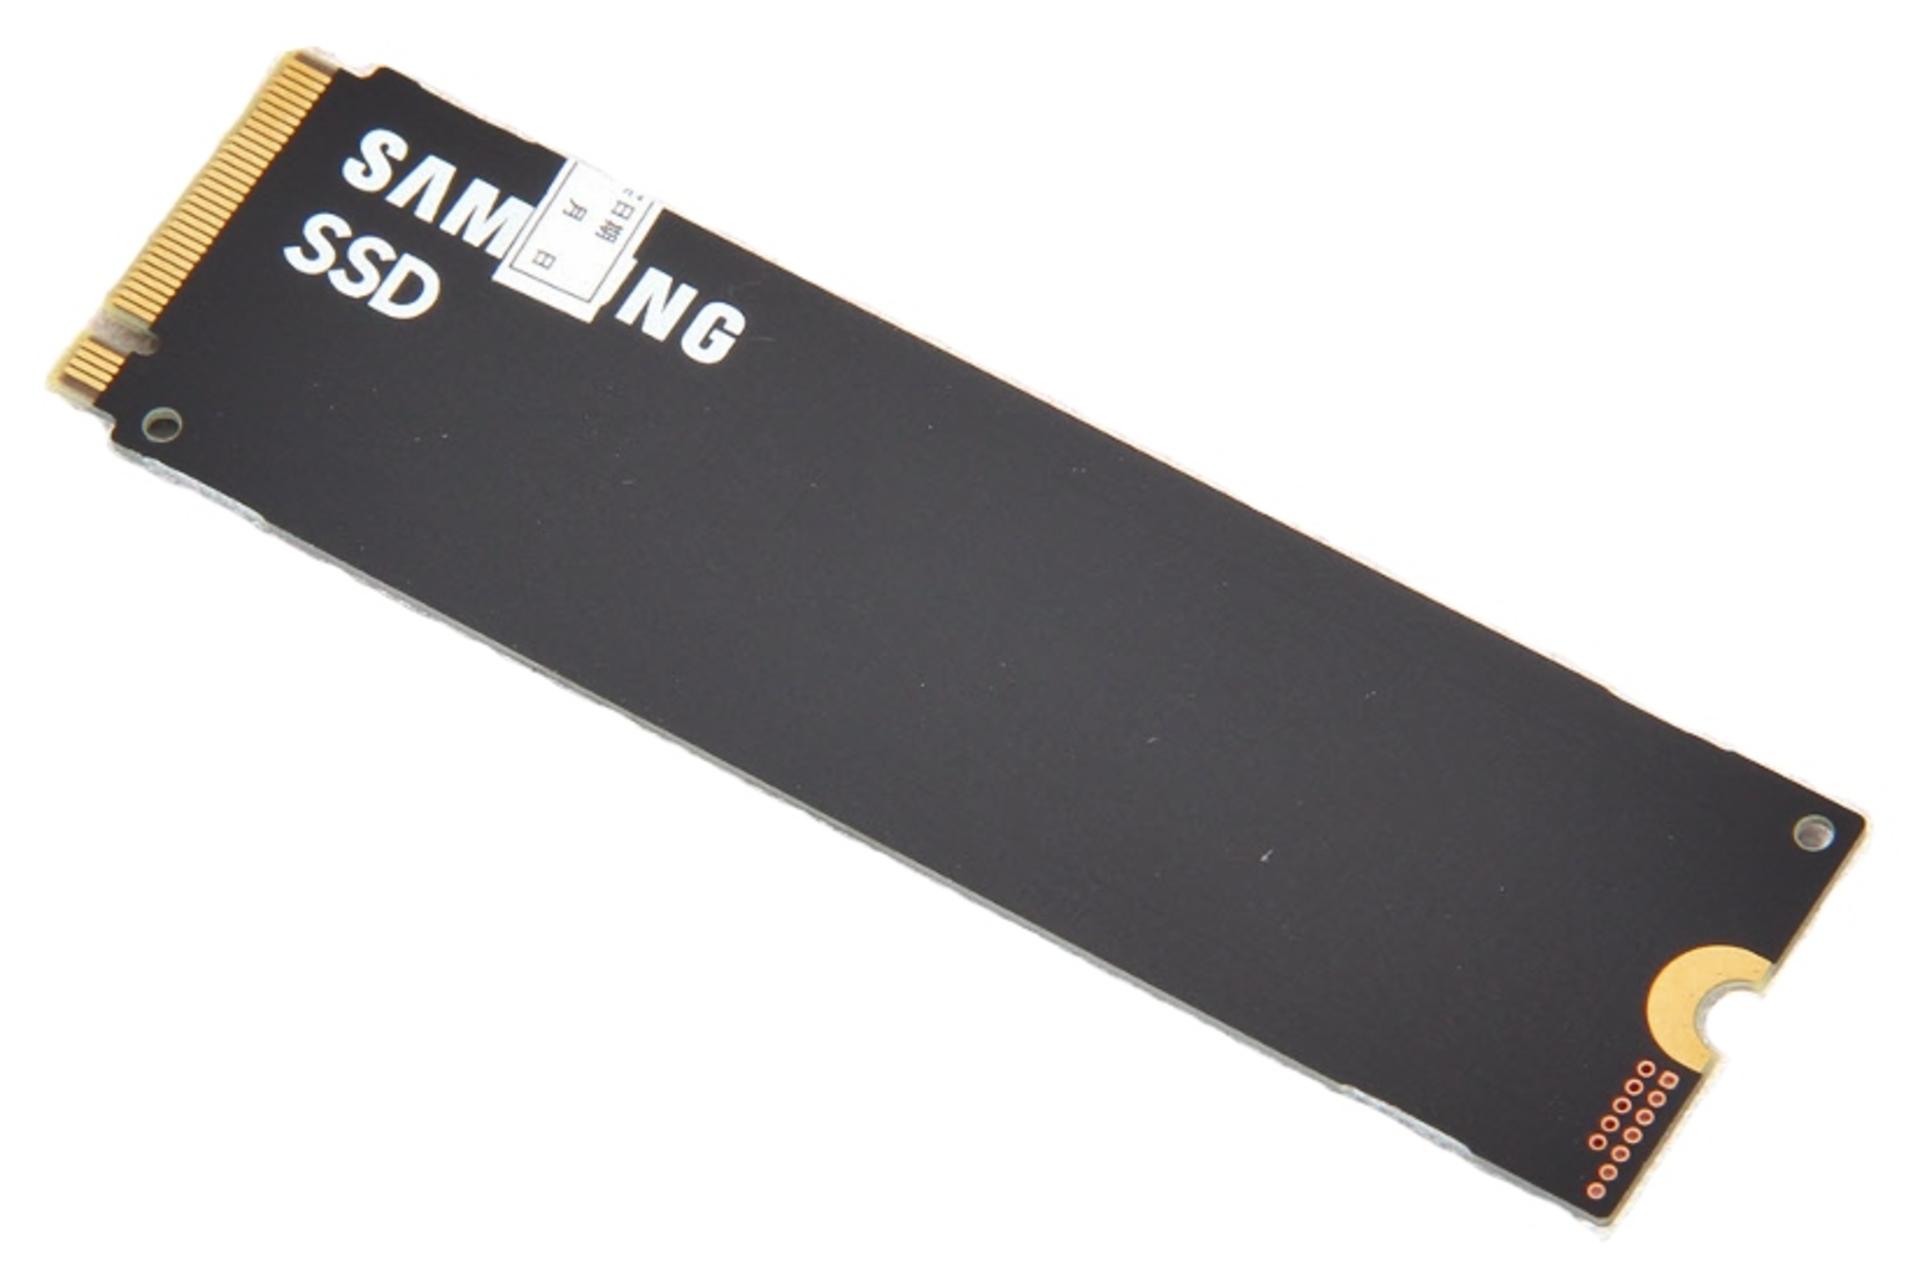 مرجع متخصصين ايران نماي بالا SSD سامسونگ Samsung PM9A1 NVMe M.2 256GB ظرفيت 256 گيگابايت